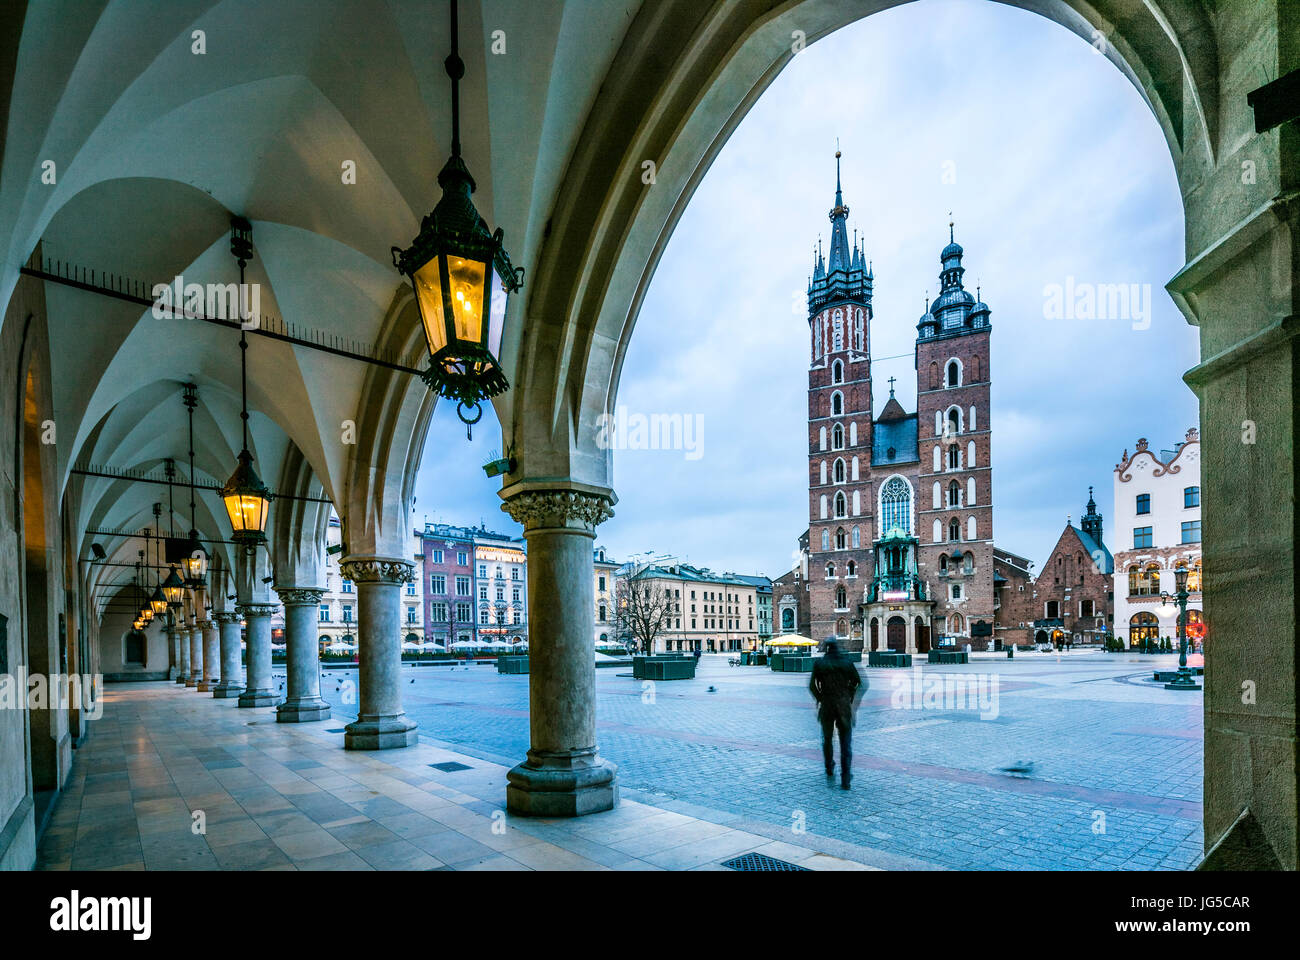 Belle place du marché de Cracovie, Pologne, Europe. Couleurs fanées. Banque D'Images